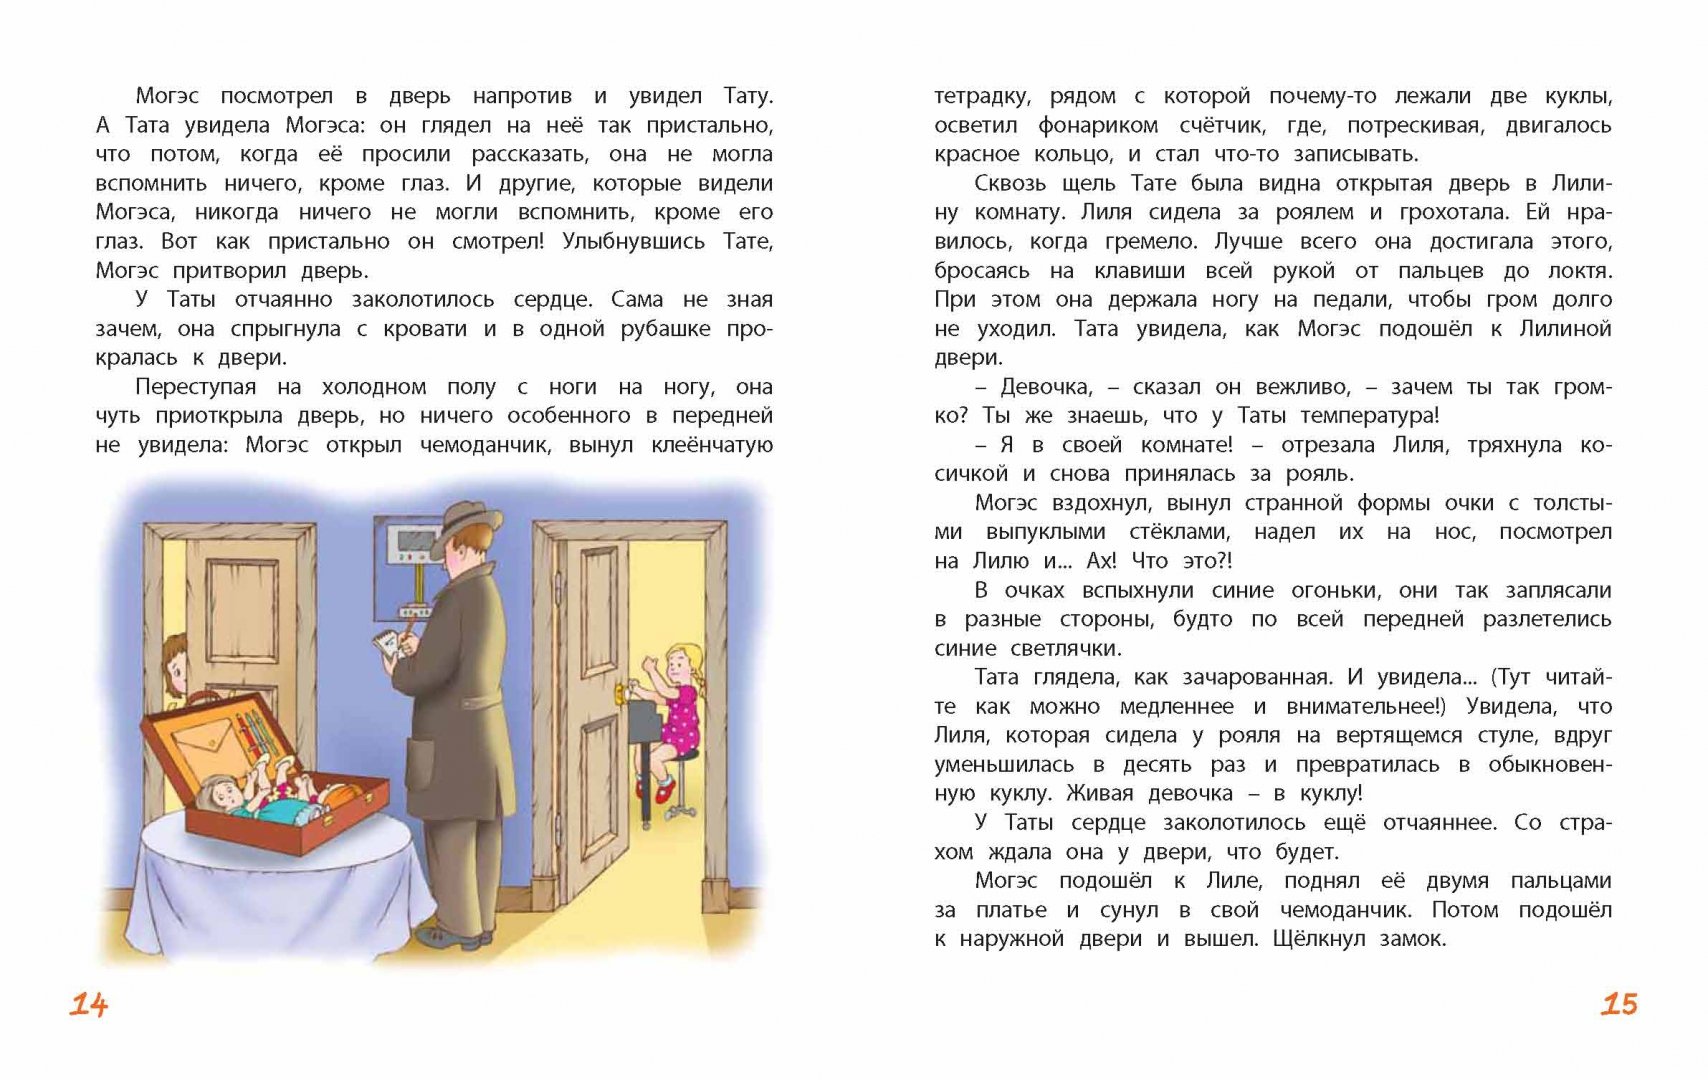 Иллюстрация 23 из 26 для Кукольная комедия - Виткович, Ягдфельд | Лабиринт - книги. Источник: Лабиринт